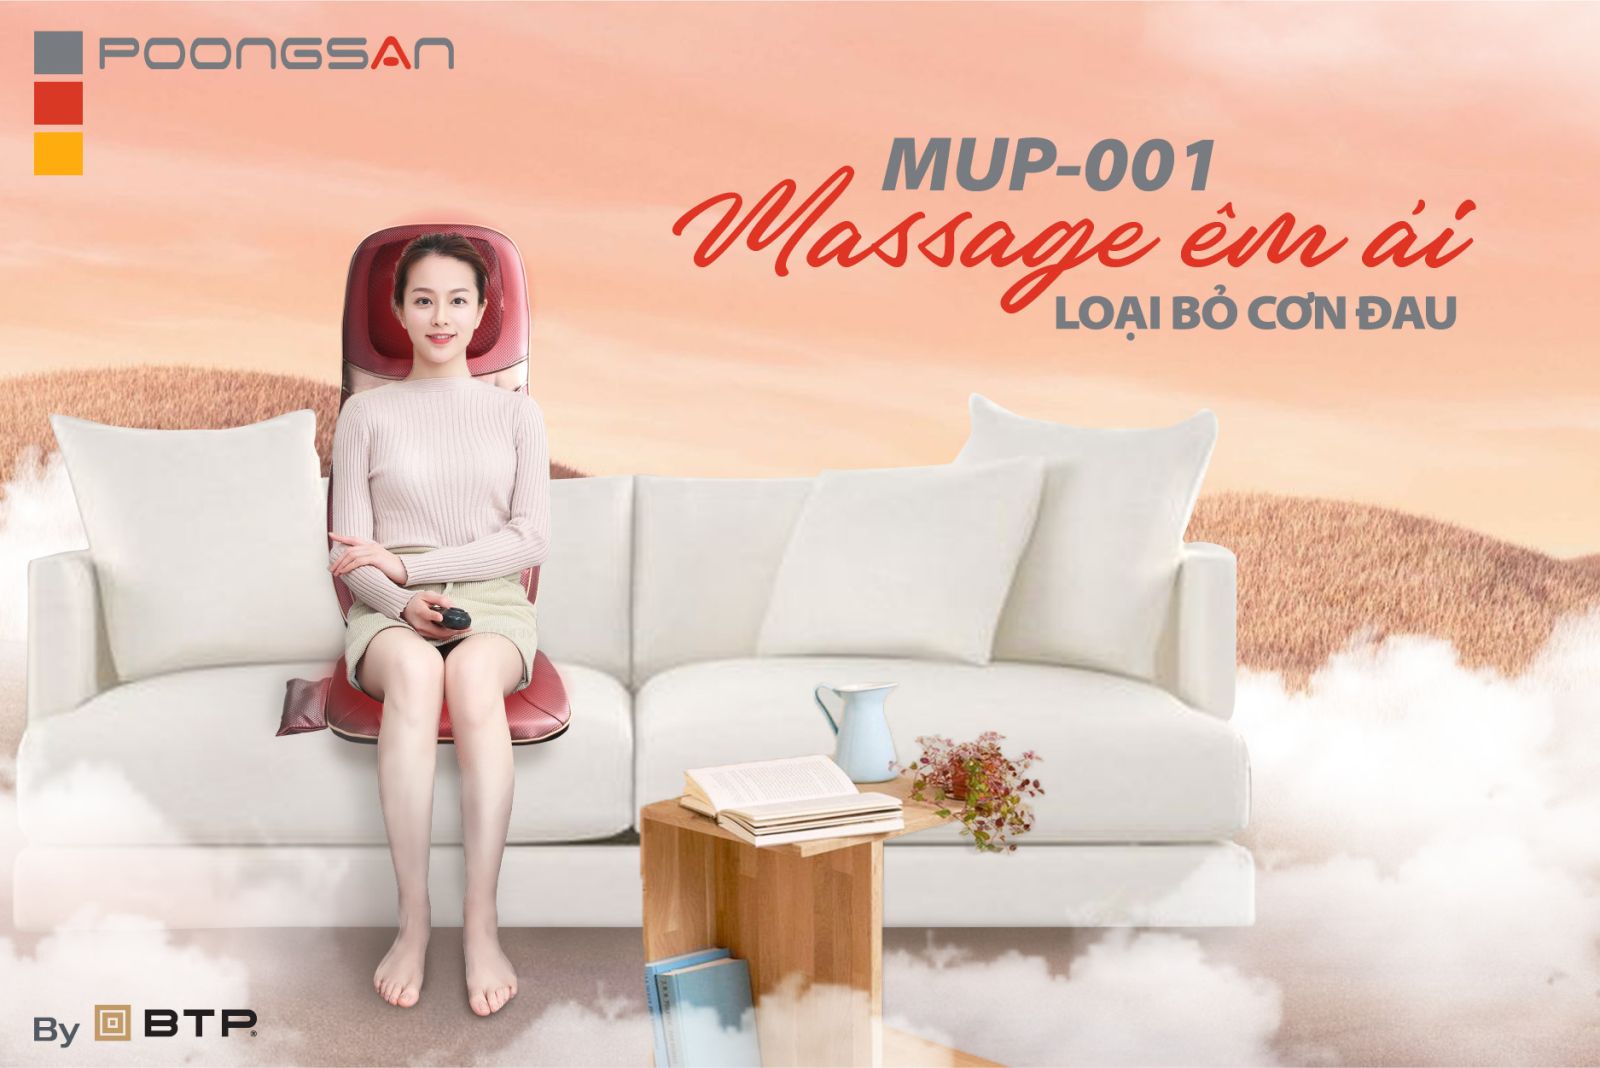 Đệm massage MUP-001 dưới 10 triệu nhỏ gọn giúp loại bỏ nhanh các cơn đau mỏi